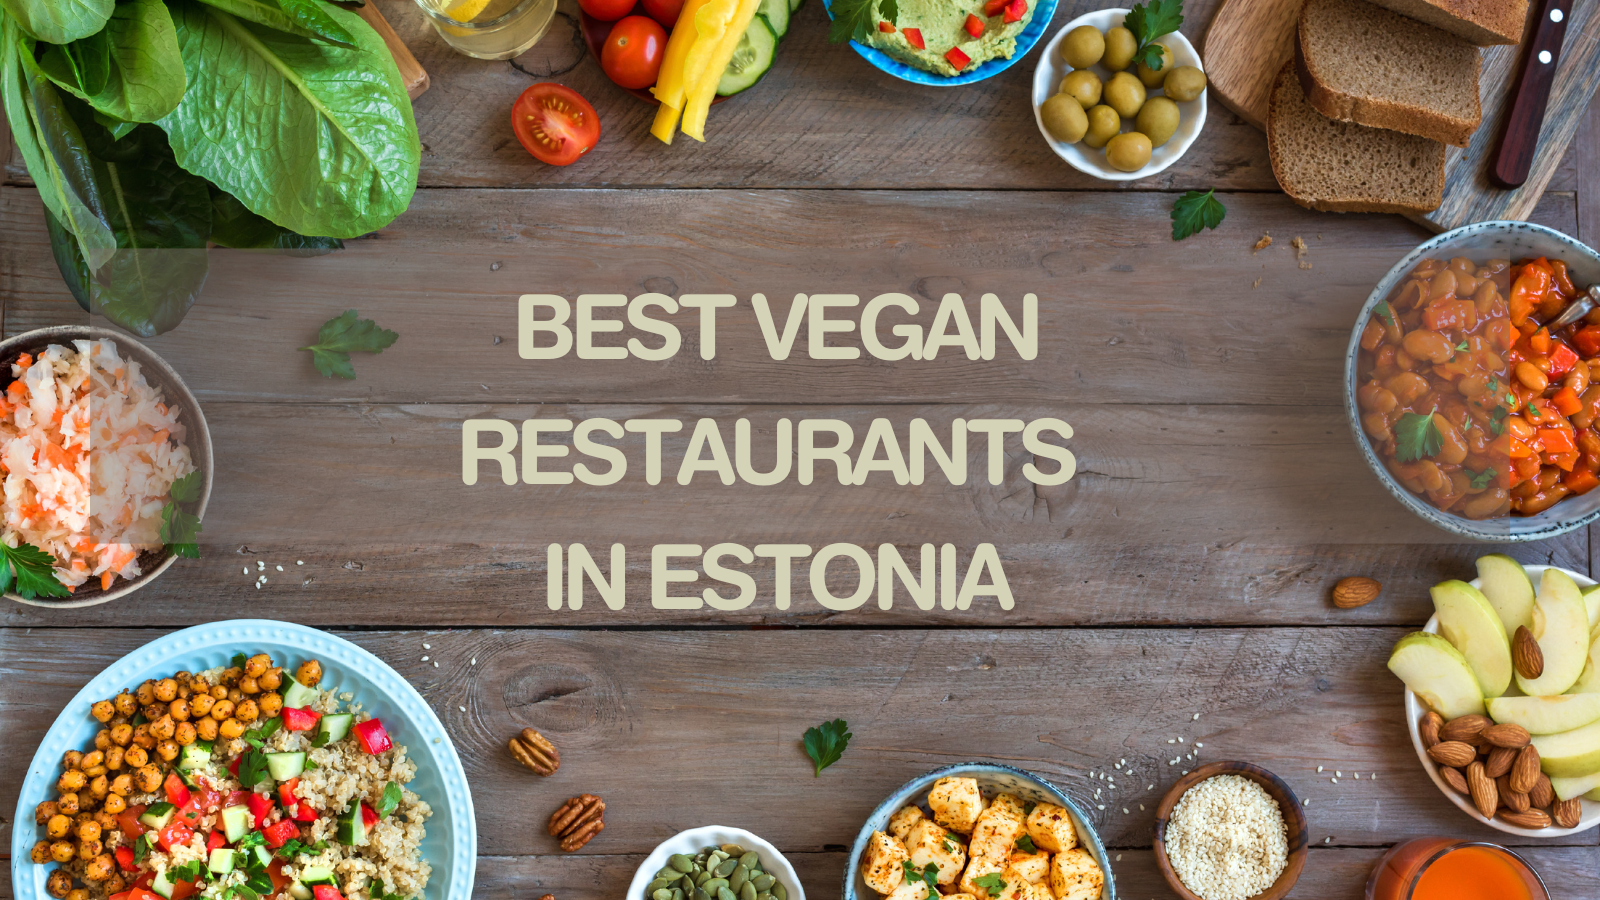 Best Vegan Restaurants In Estonia